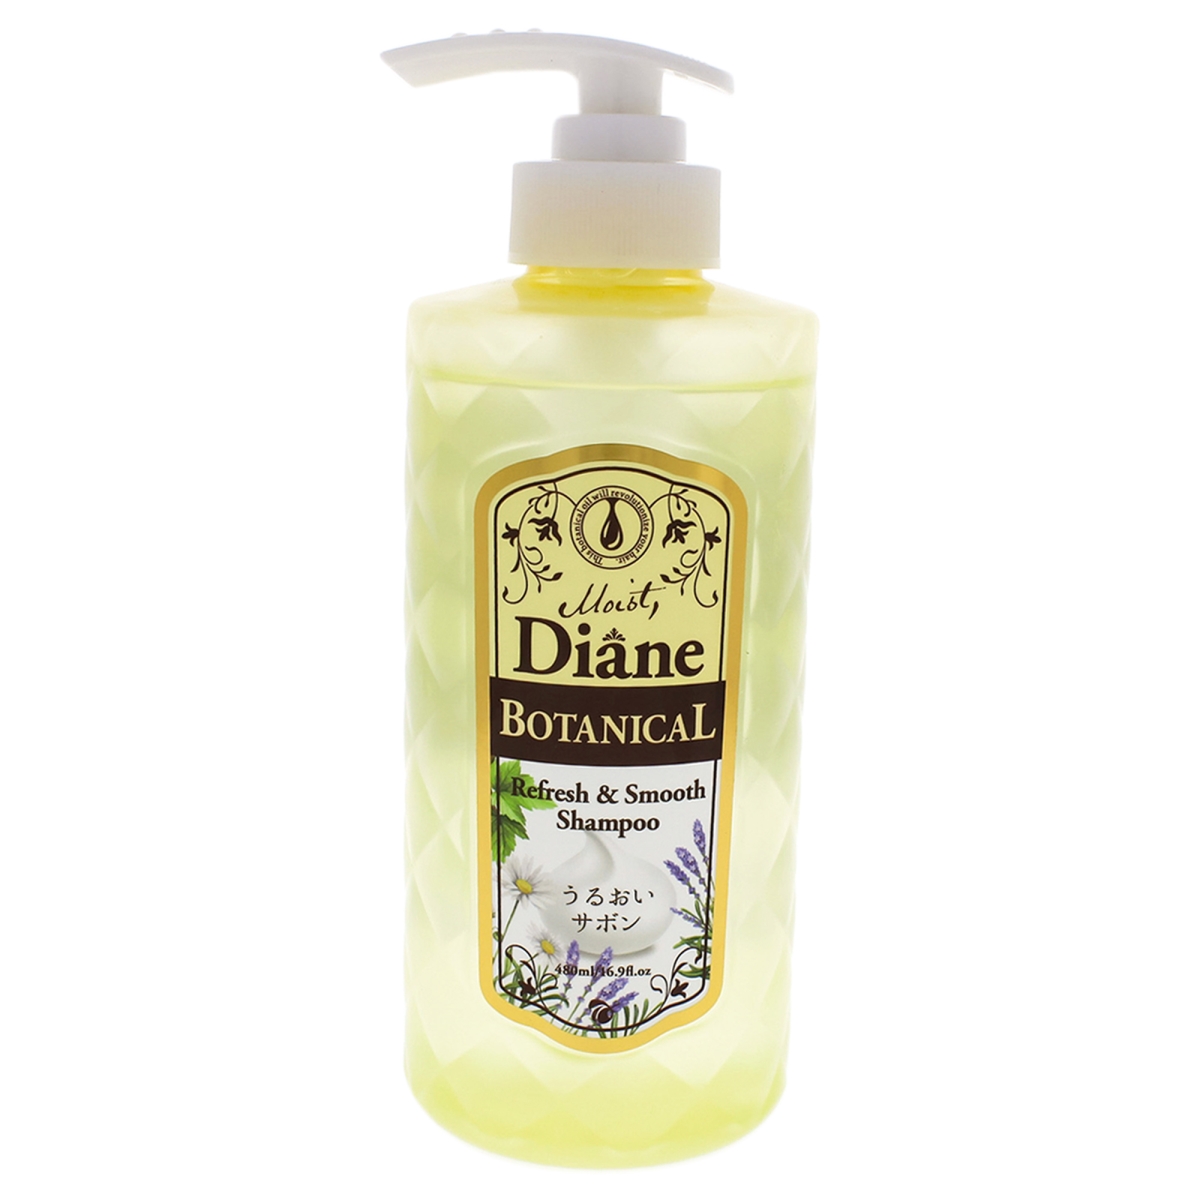 I0088276 Botanical Refresh & Smooth Shampoo For Unisex - 16.9 Oz